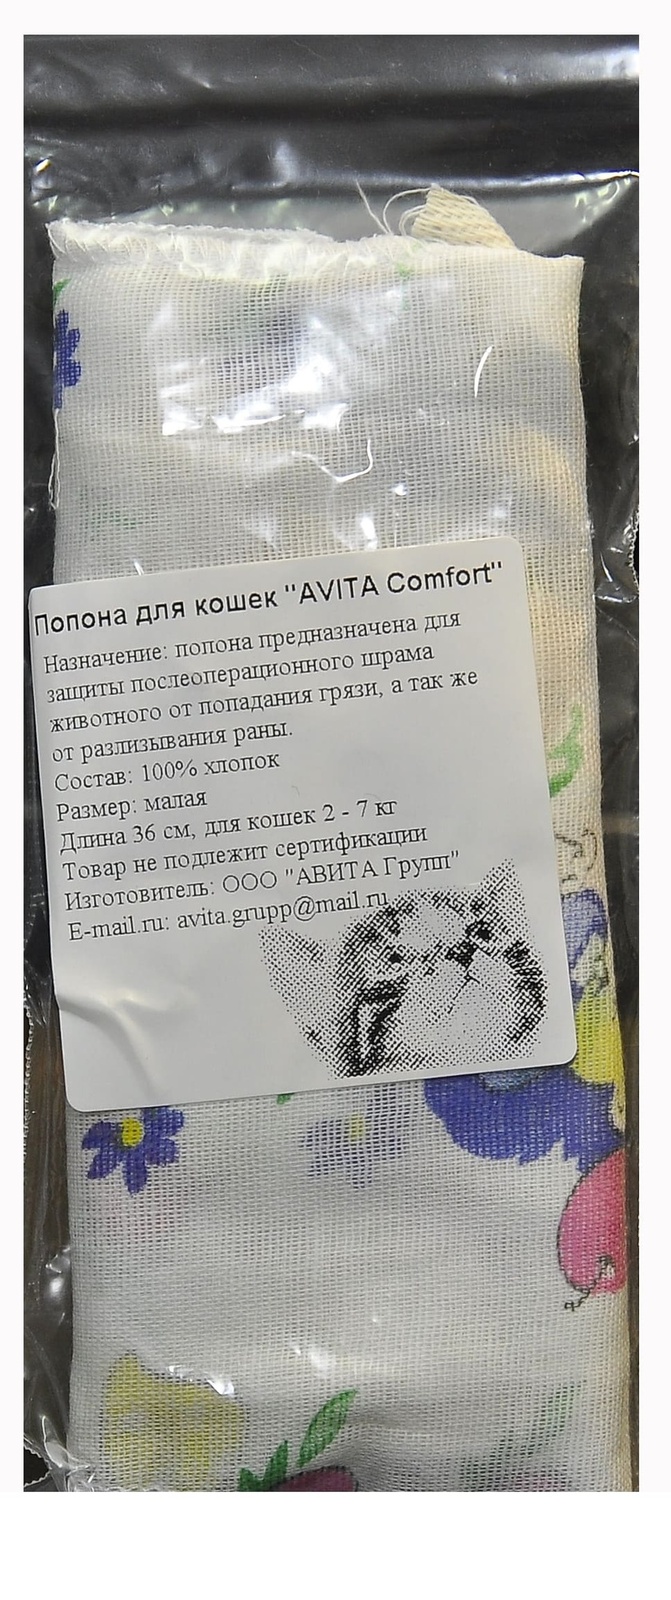 Авита-групп попонка послеоперационная для кошек (ситец) (100 г)